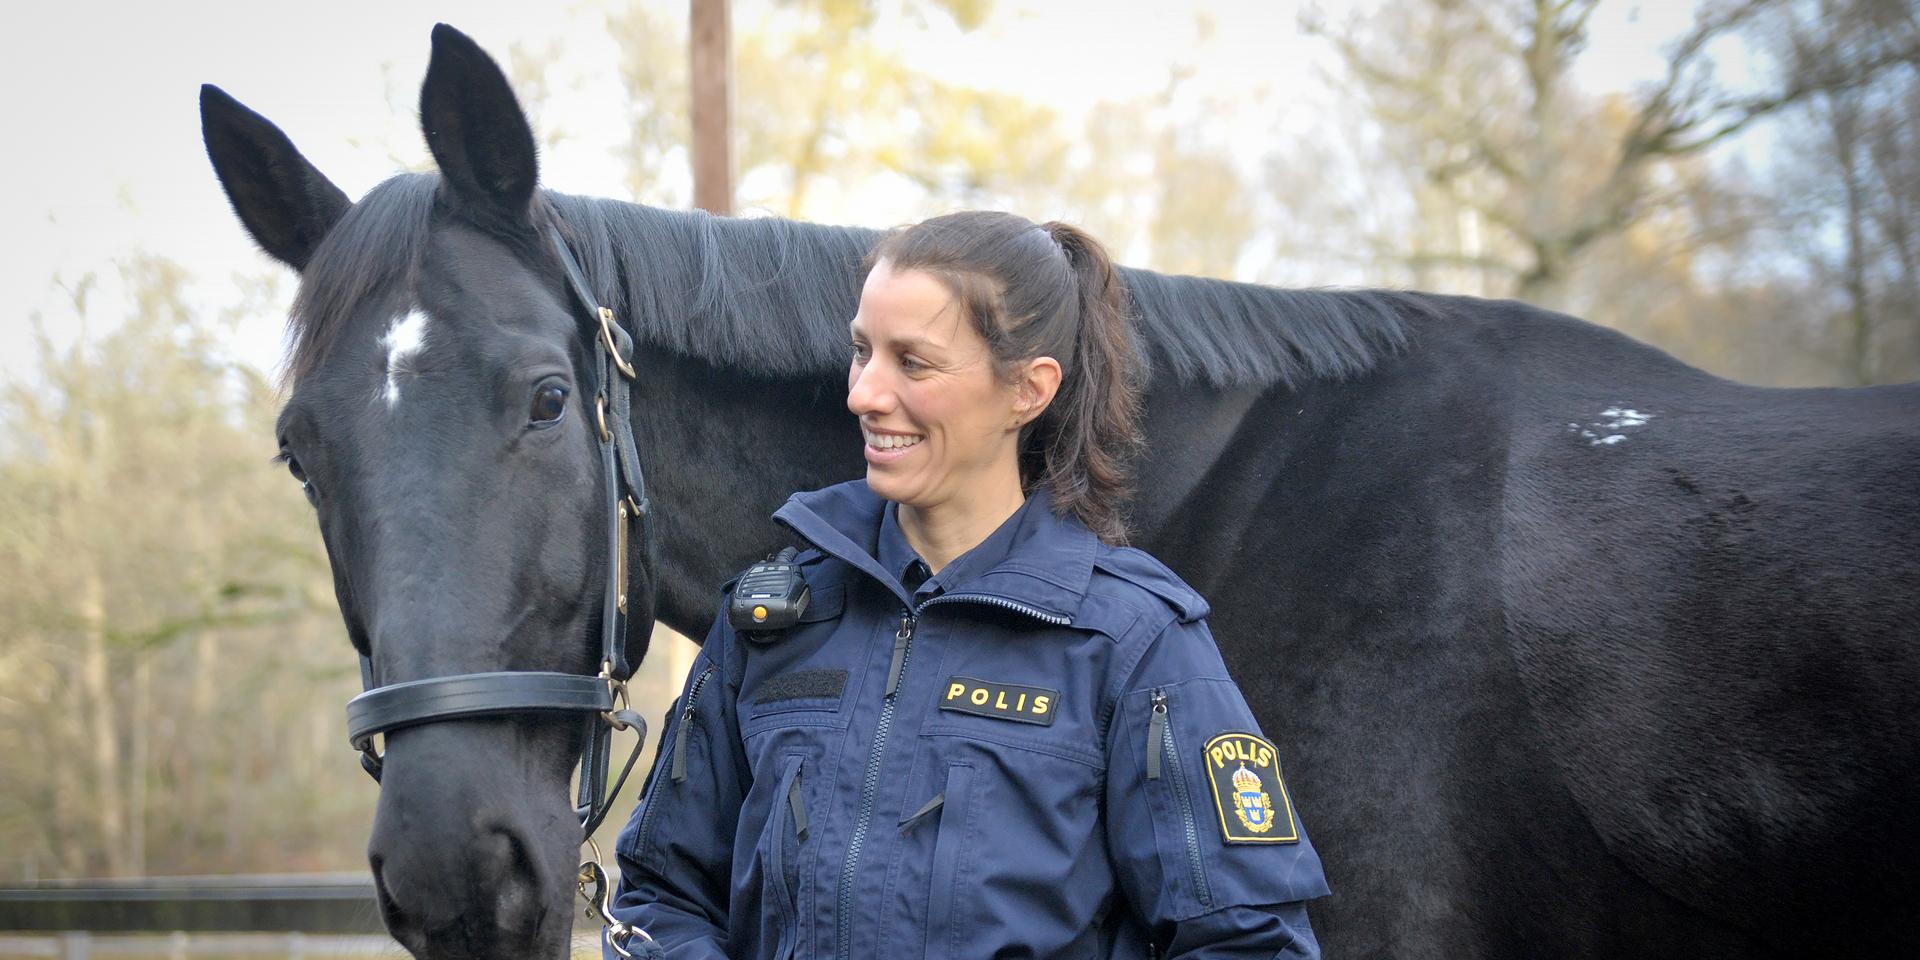  ”Det är verkligen världens bästa jobb. Det är fantastiskt att jag kan kombinera mitt yrke som polis med min hobby, hästarna”, säger Anna med kvardröjande värme.